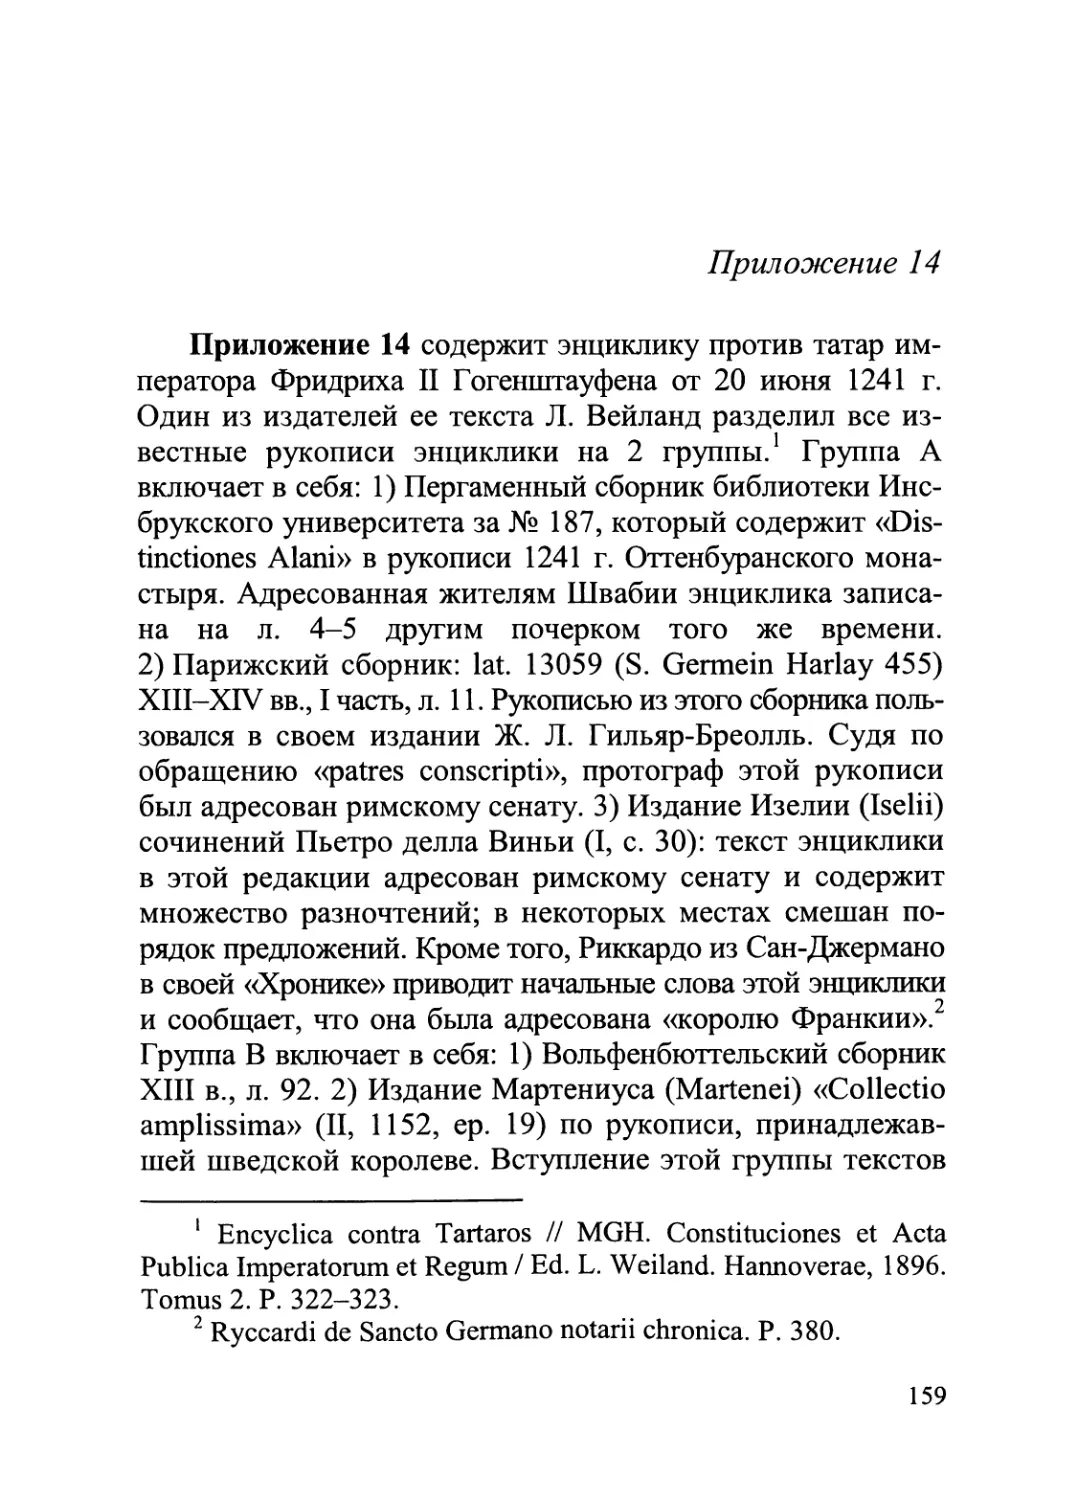 Приложение 14. Энциклика против татар императора Фридриха II Гогенштауфена от 20 июня 1241 г.